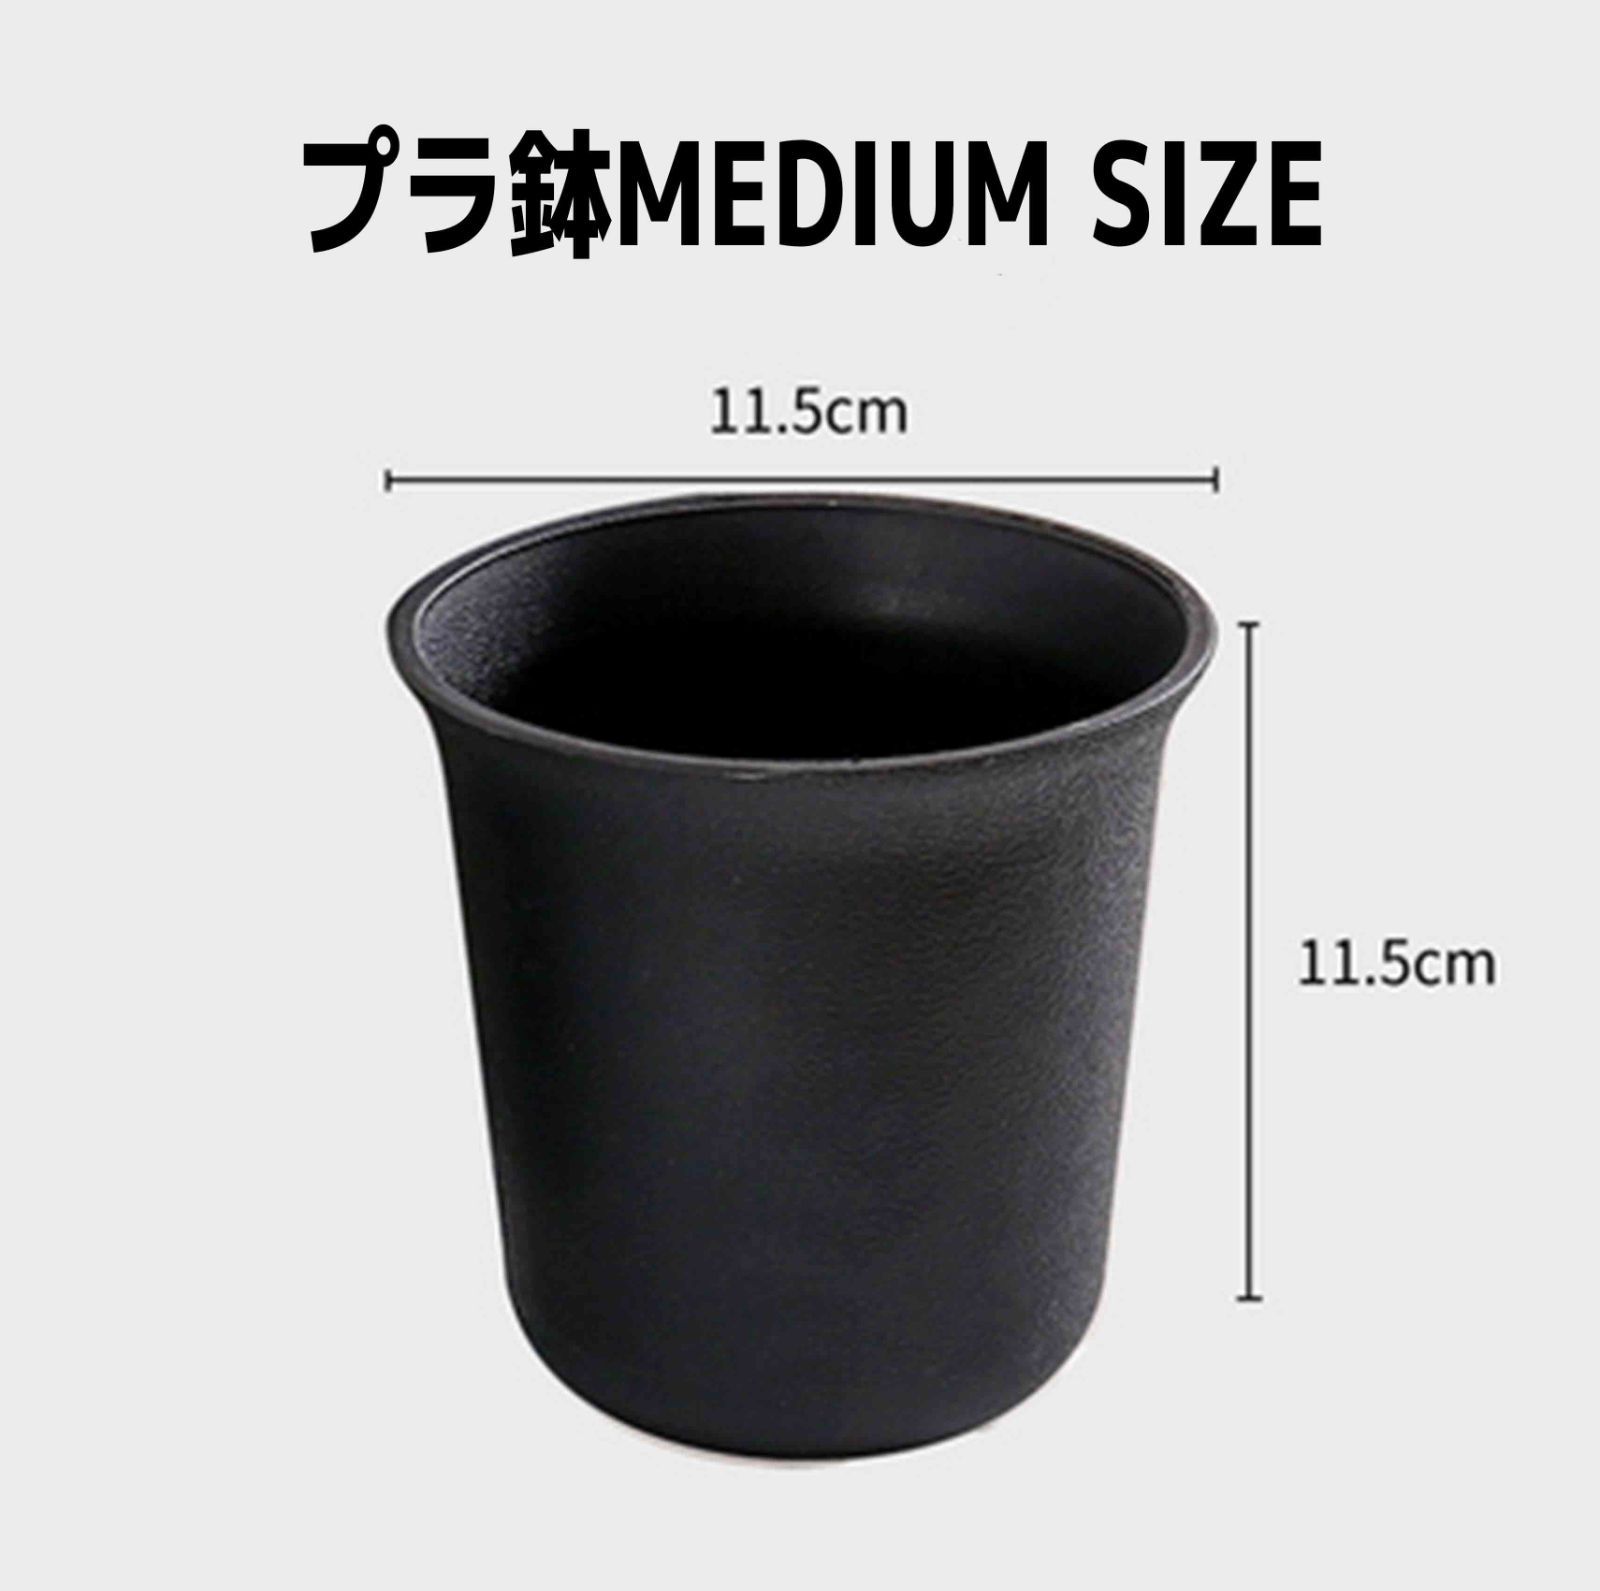 メルカリShops - 【セール品】植木鉢 11.5×11.5cmプラスチック 多肉植物鉢 10個セット